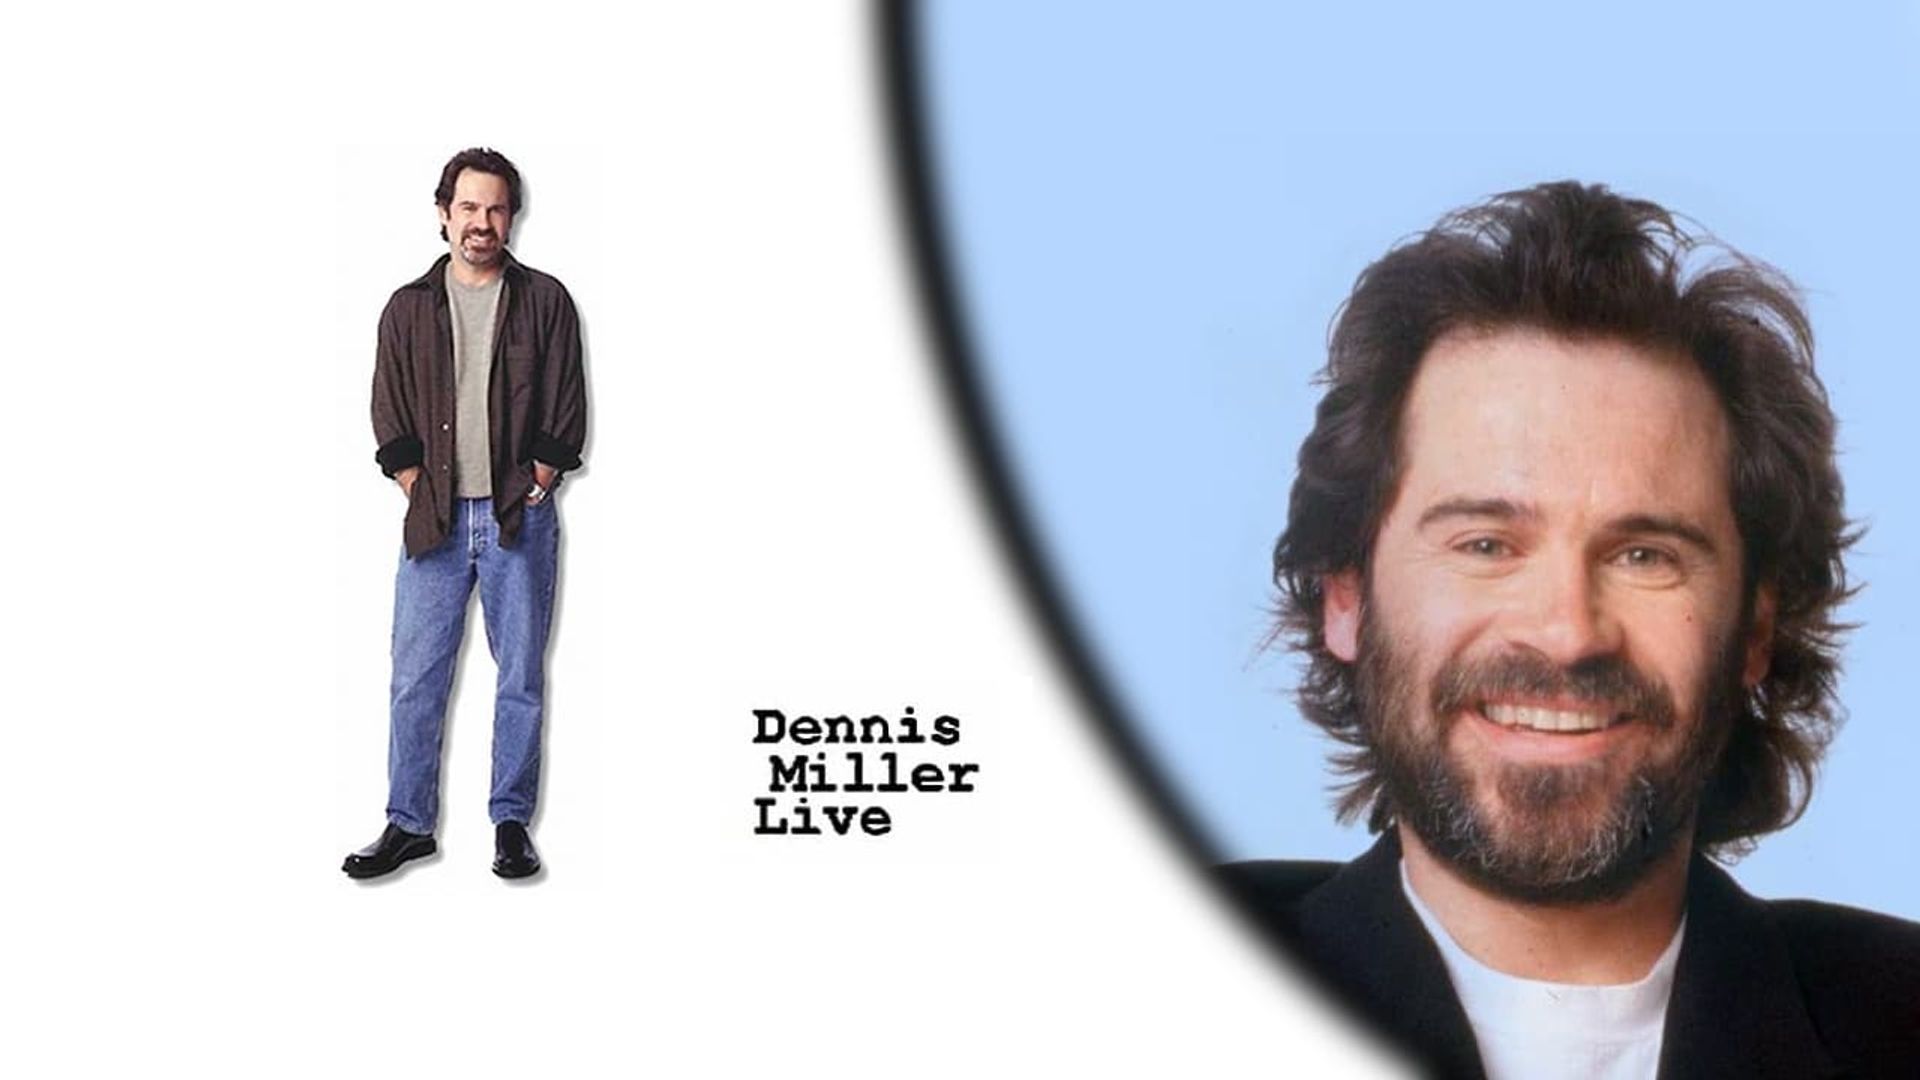 Dennis Miller Live background